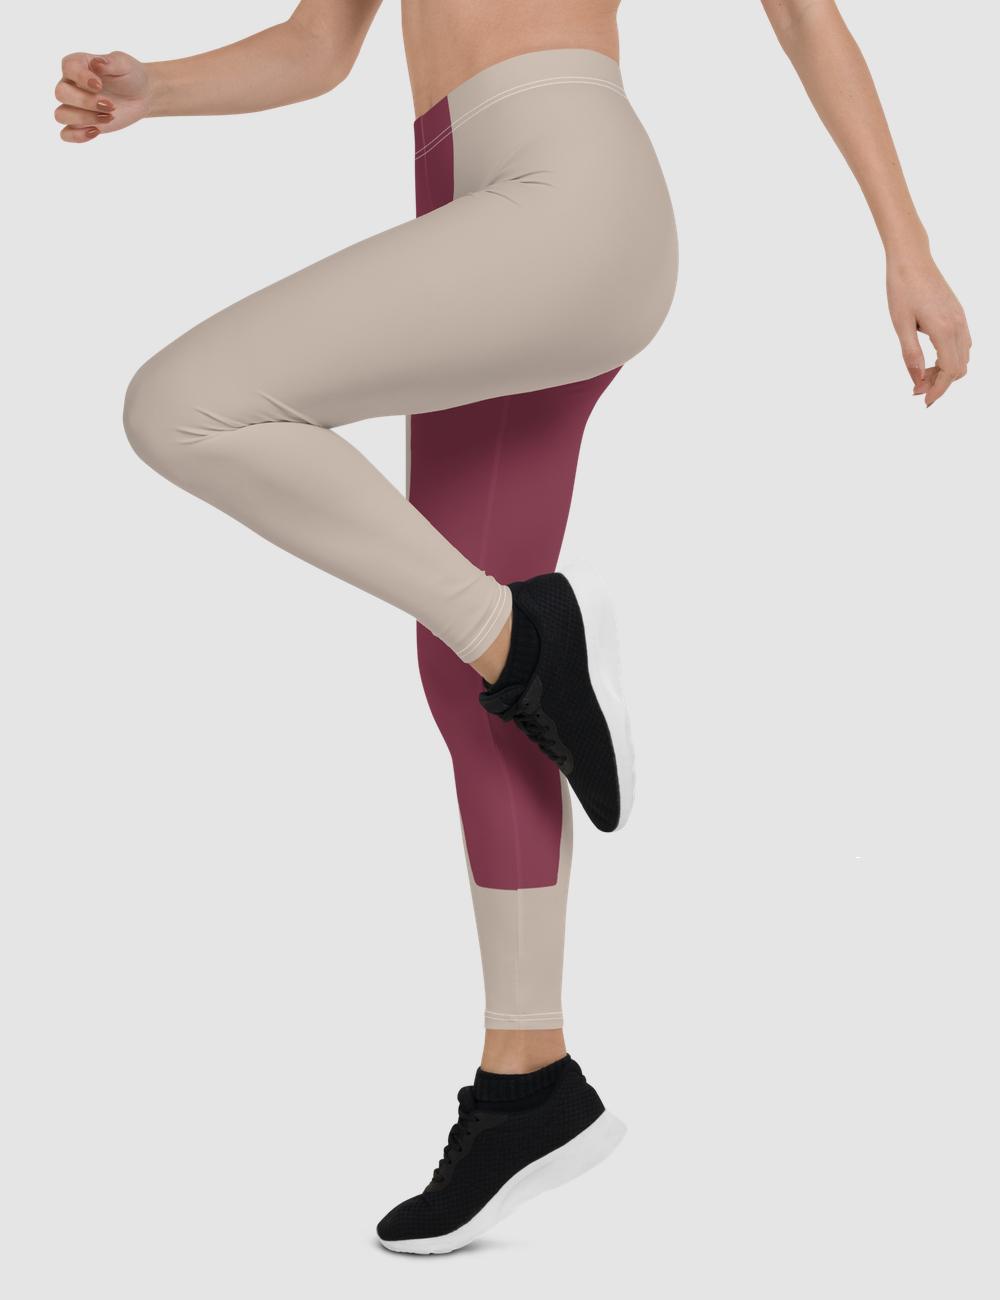 Imperial Scout | Women's Standard Yoga Leggings OniTakai